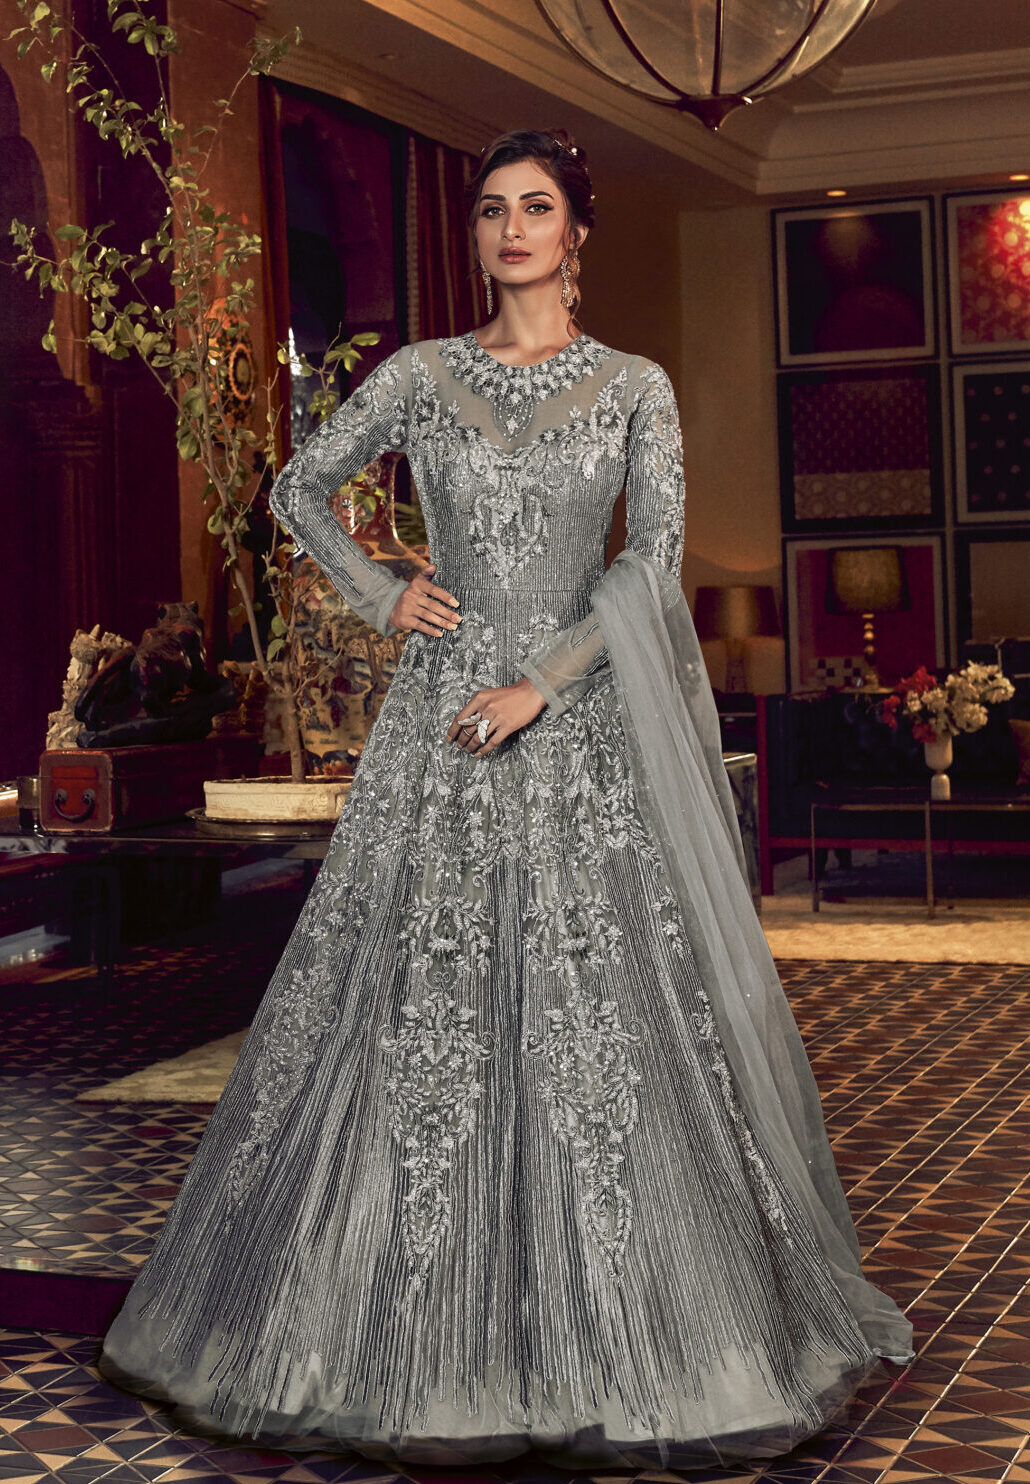 http://www.shahifits.in/wp-content/uploads/2021/02/New-Designer-Wedding-Dresses-for-Girls-scaled-e1612164554920.jpg